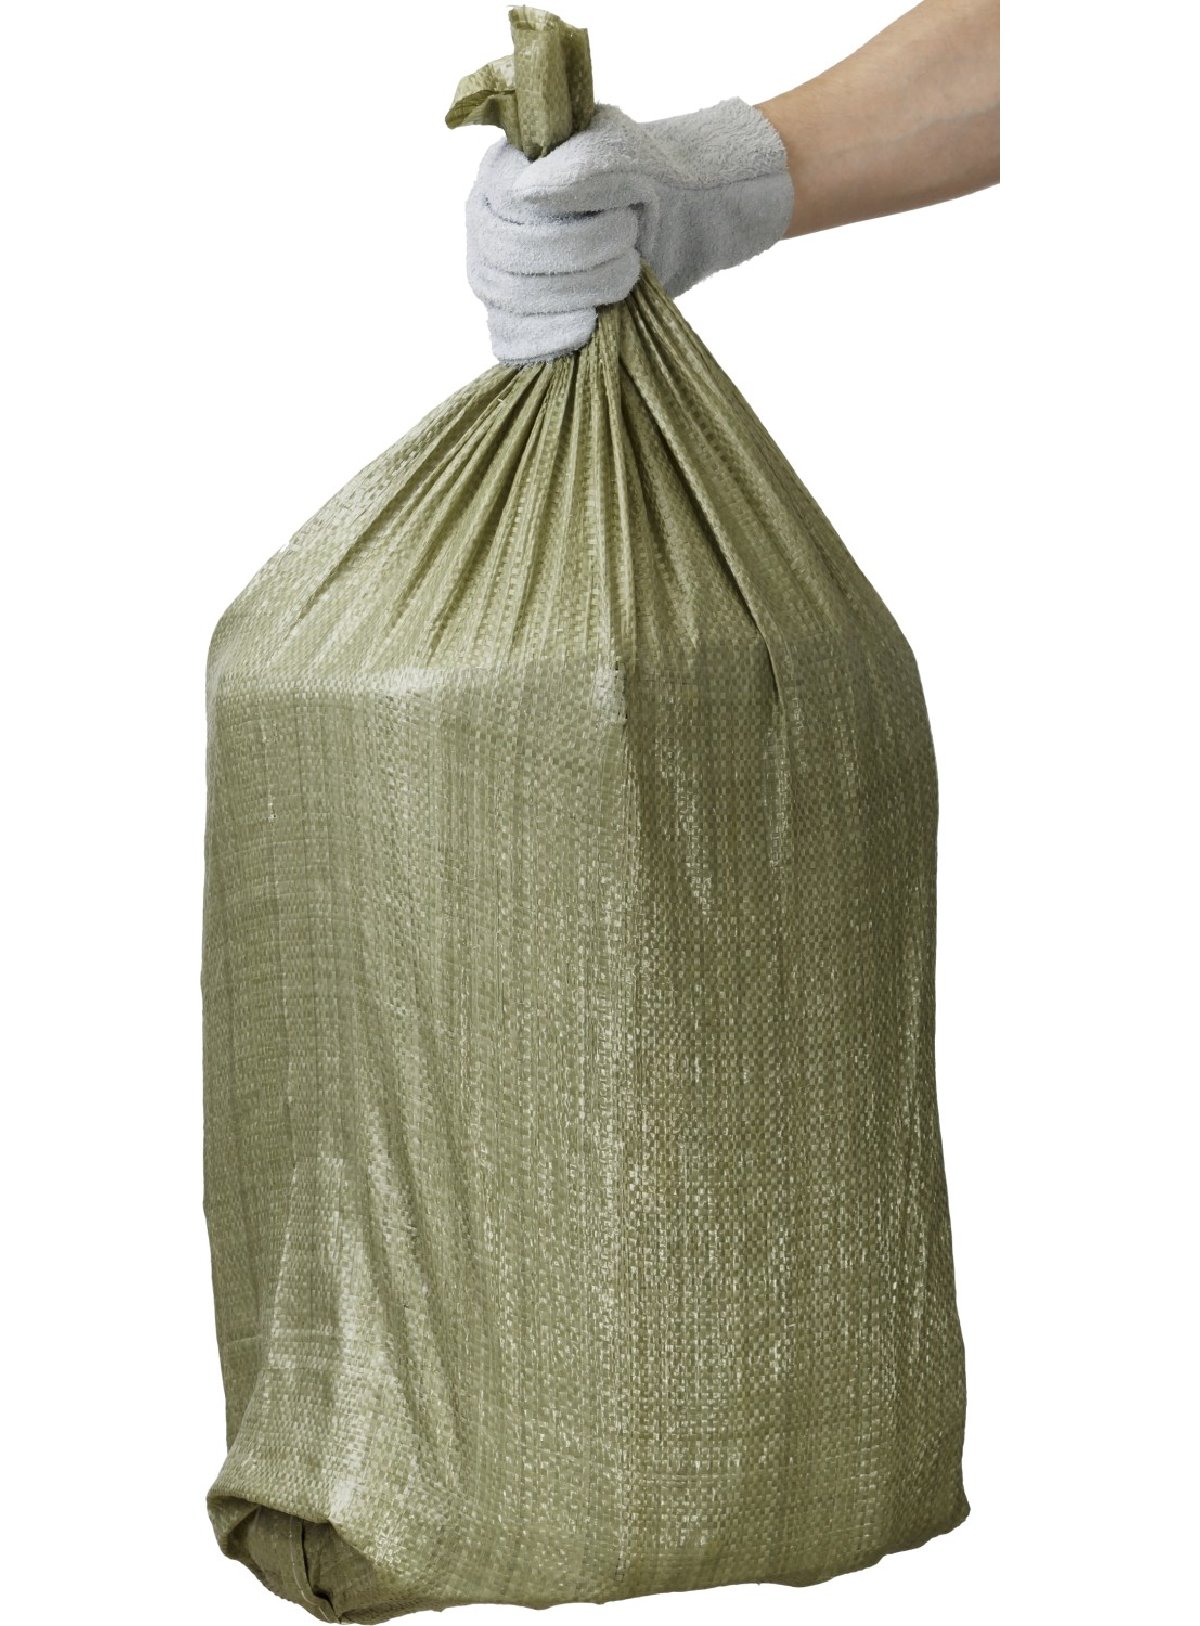 Строительные мусорные мешки STAYER 105х55см, 80л (40кг), 10шт, плетеные хозяйственные, зеленые, HEAVY DUTY, (39158-105)